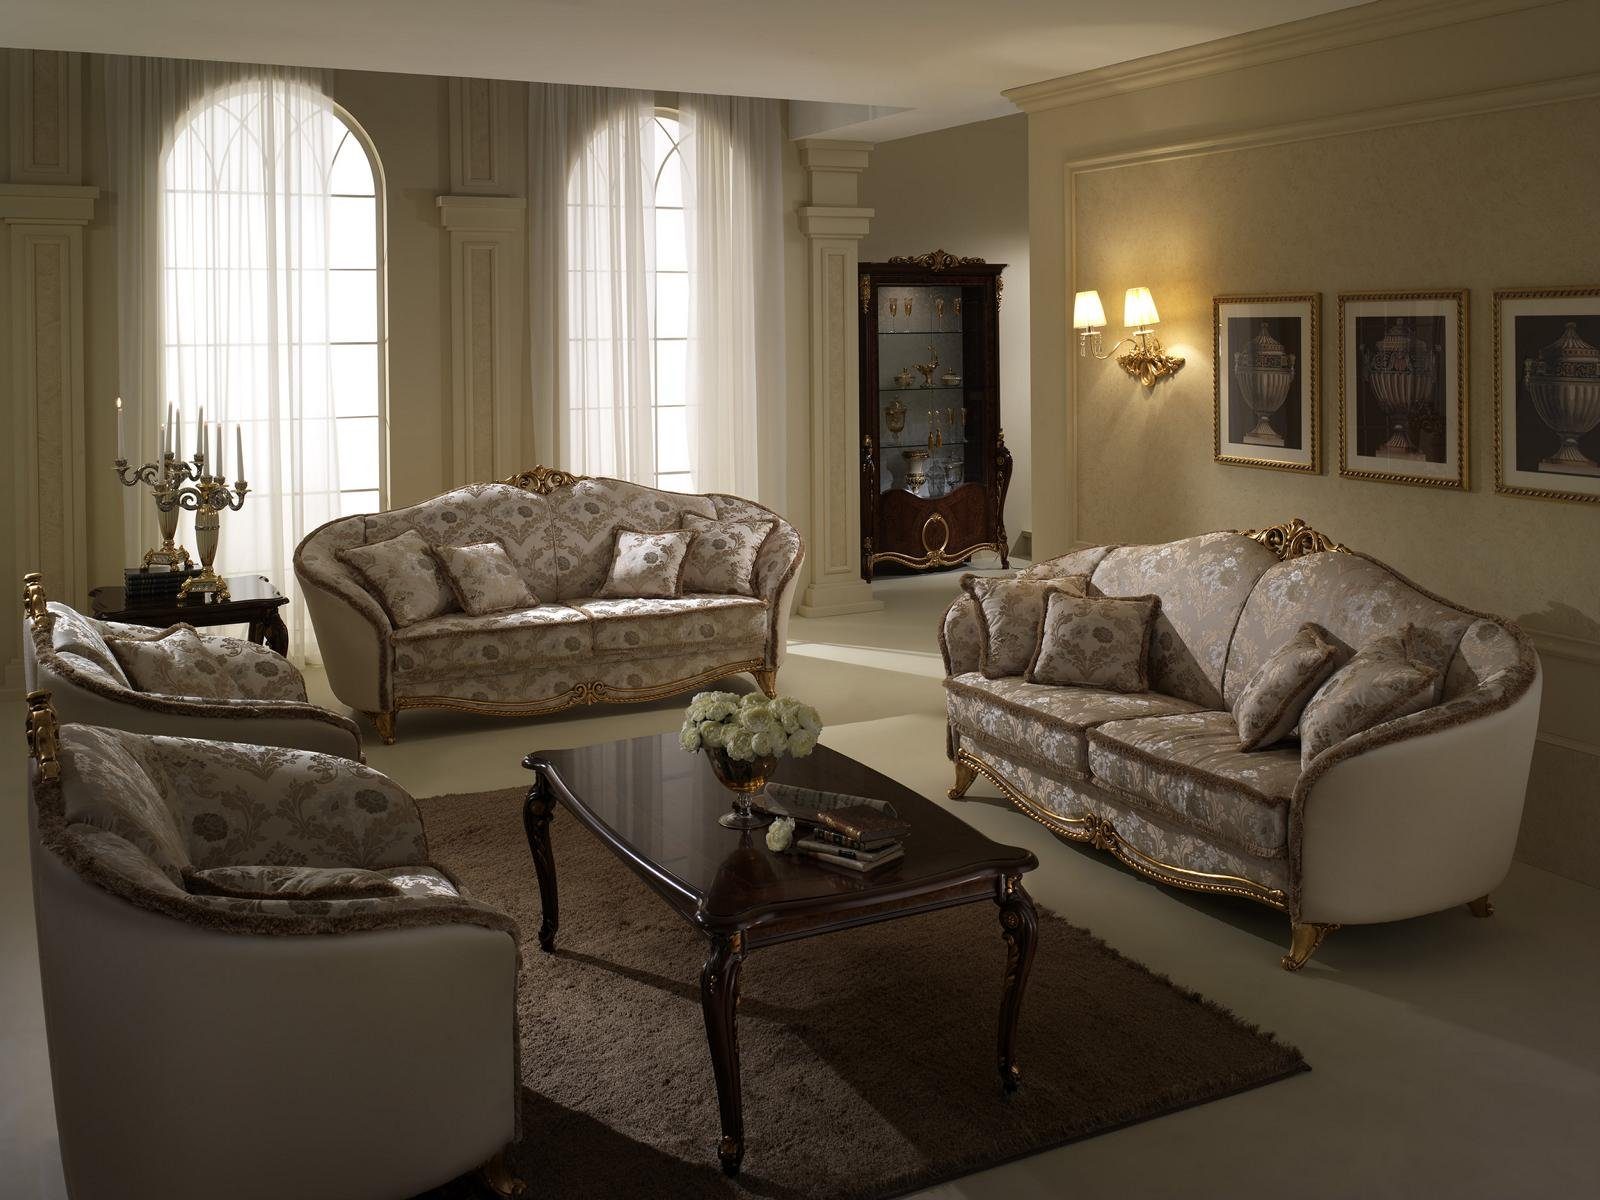 JVmoebel Wohnzimmer-Set Polster Couchen Couch Luxus Sofagarnitur 3+2+1 Sitzer Set Sofa Arredoclassic Neu